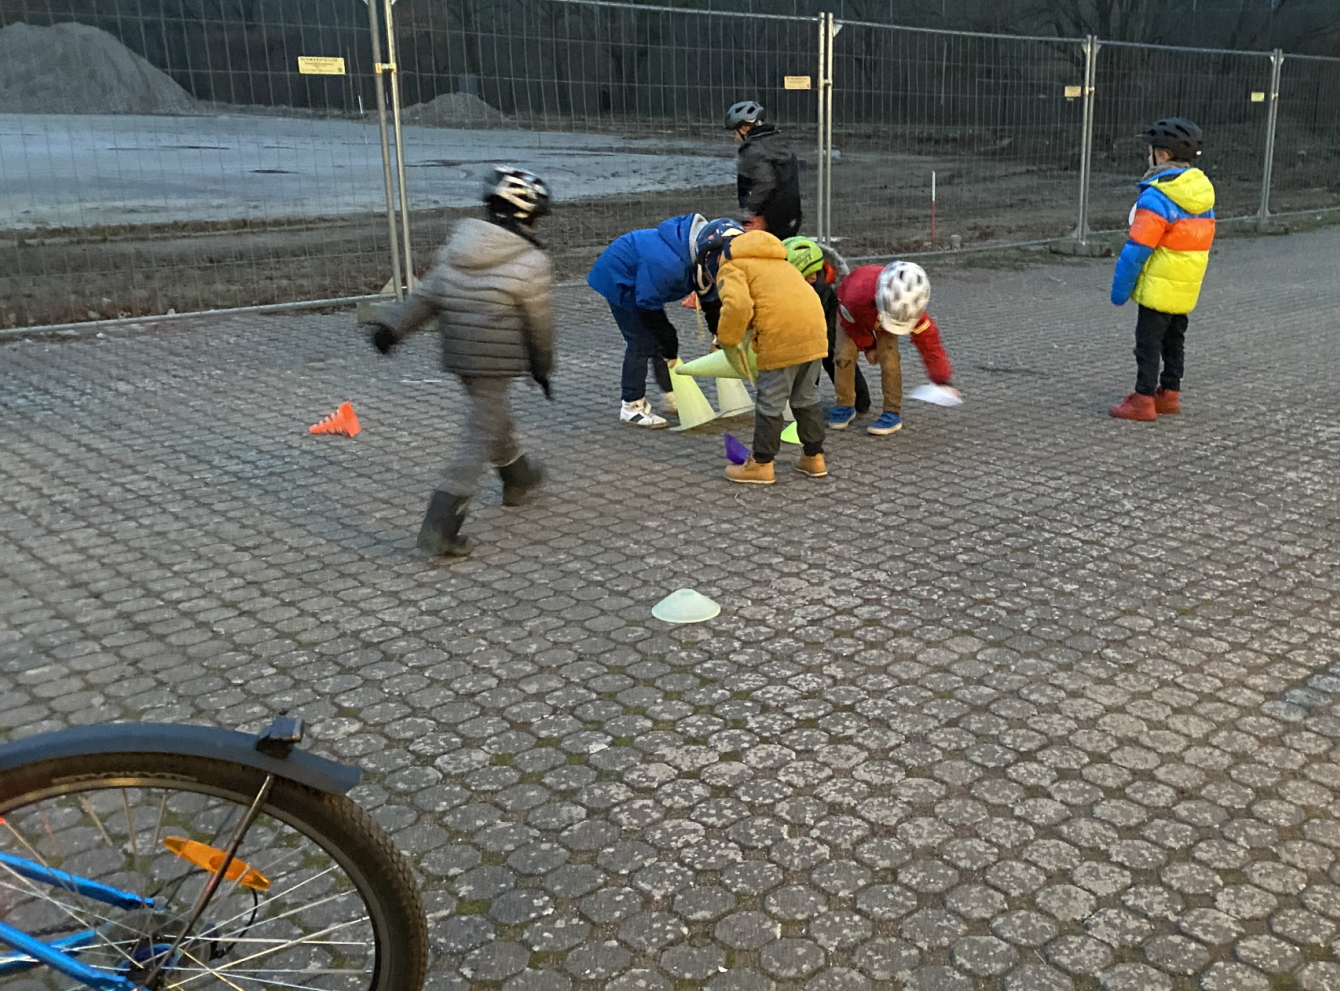 Kinder bauen Hindernisse für einen Fahrrad-Parcours auf